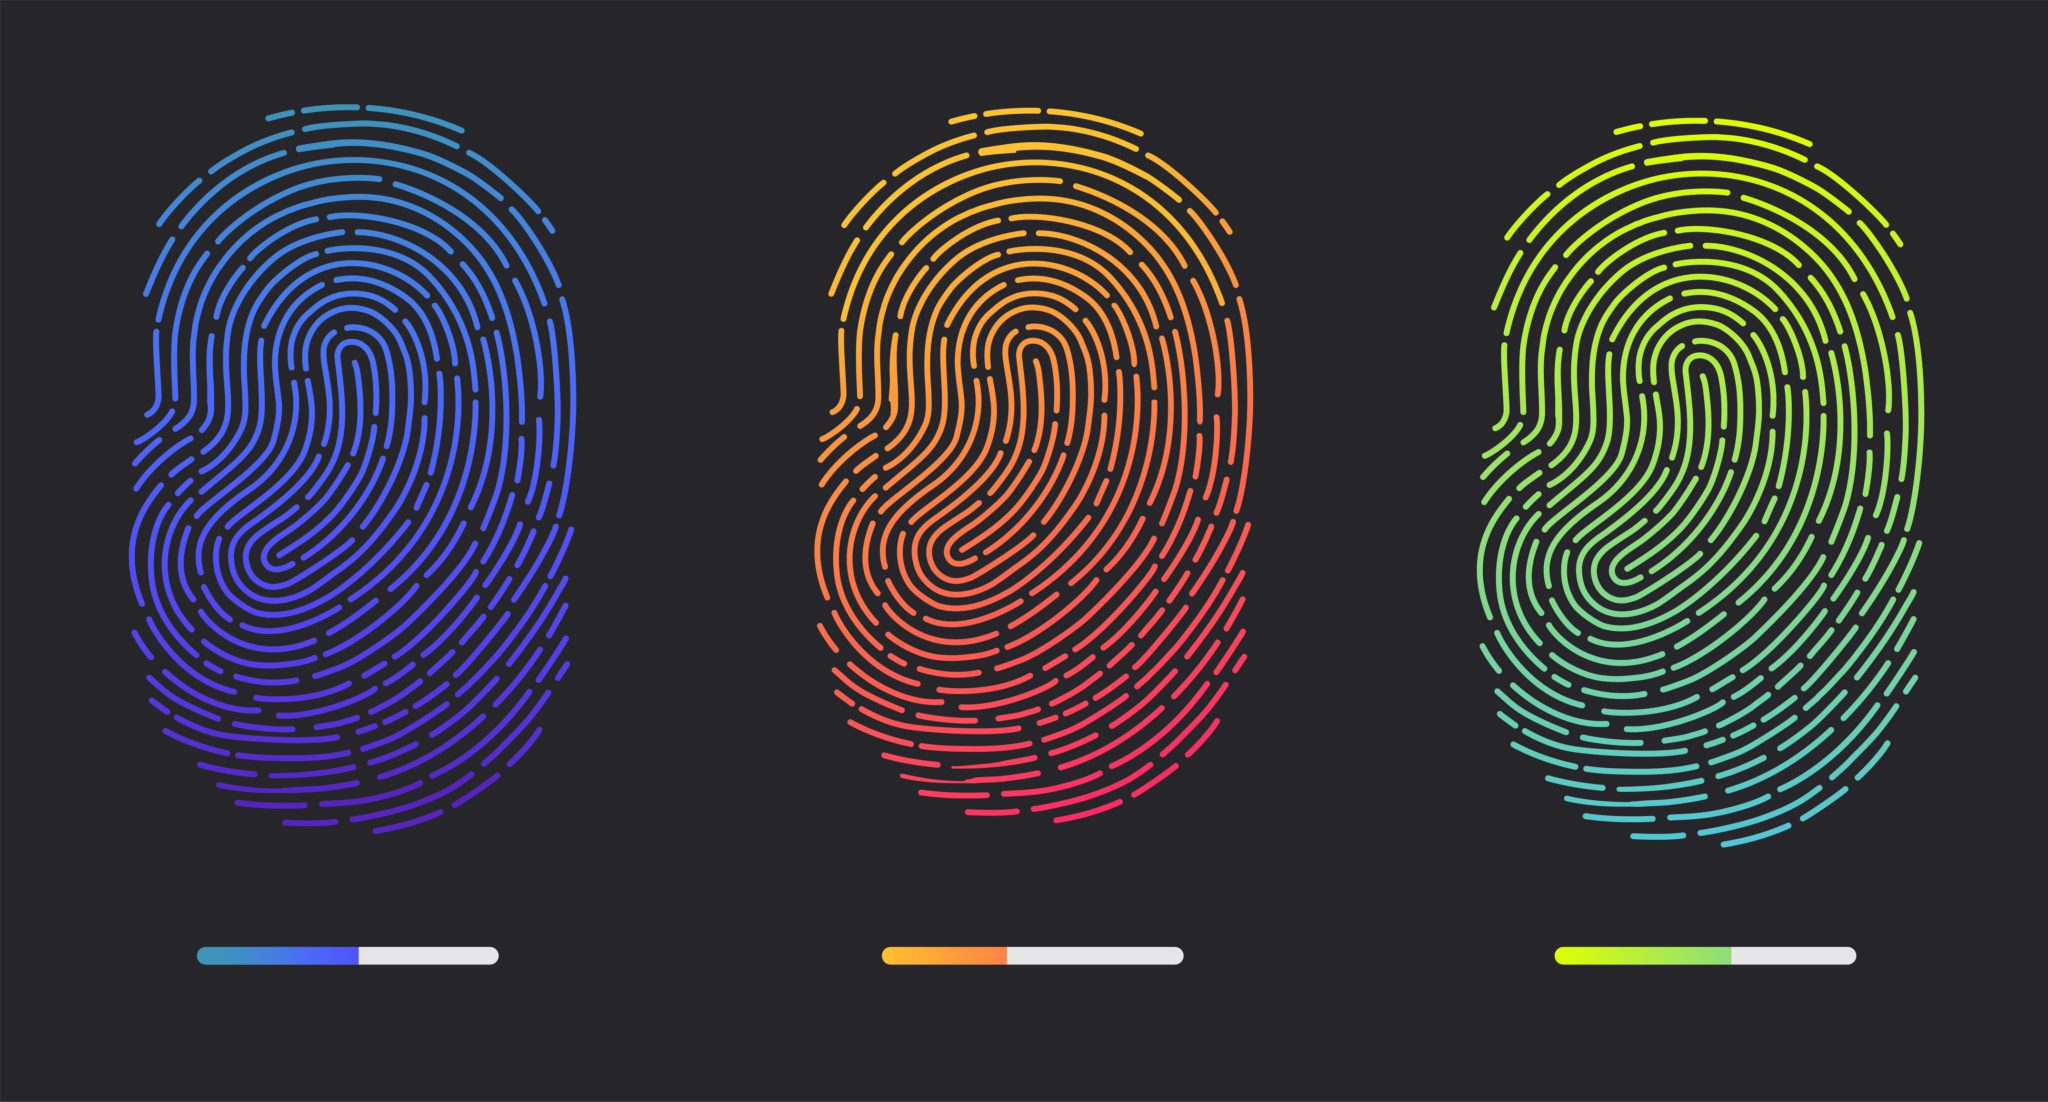 Fingerprints of different colors